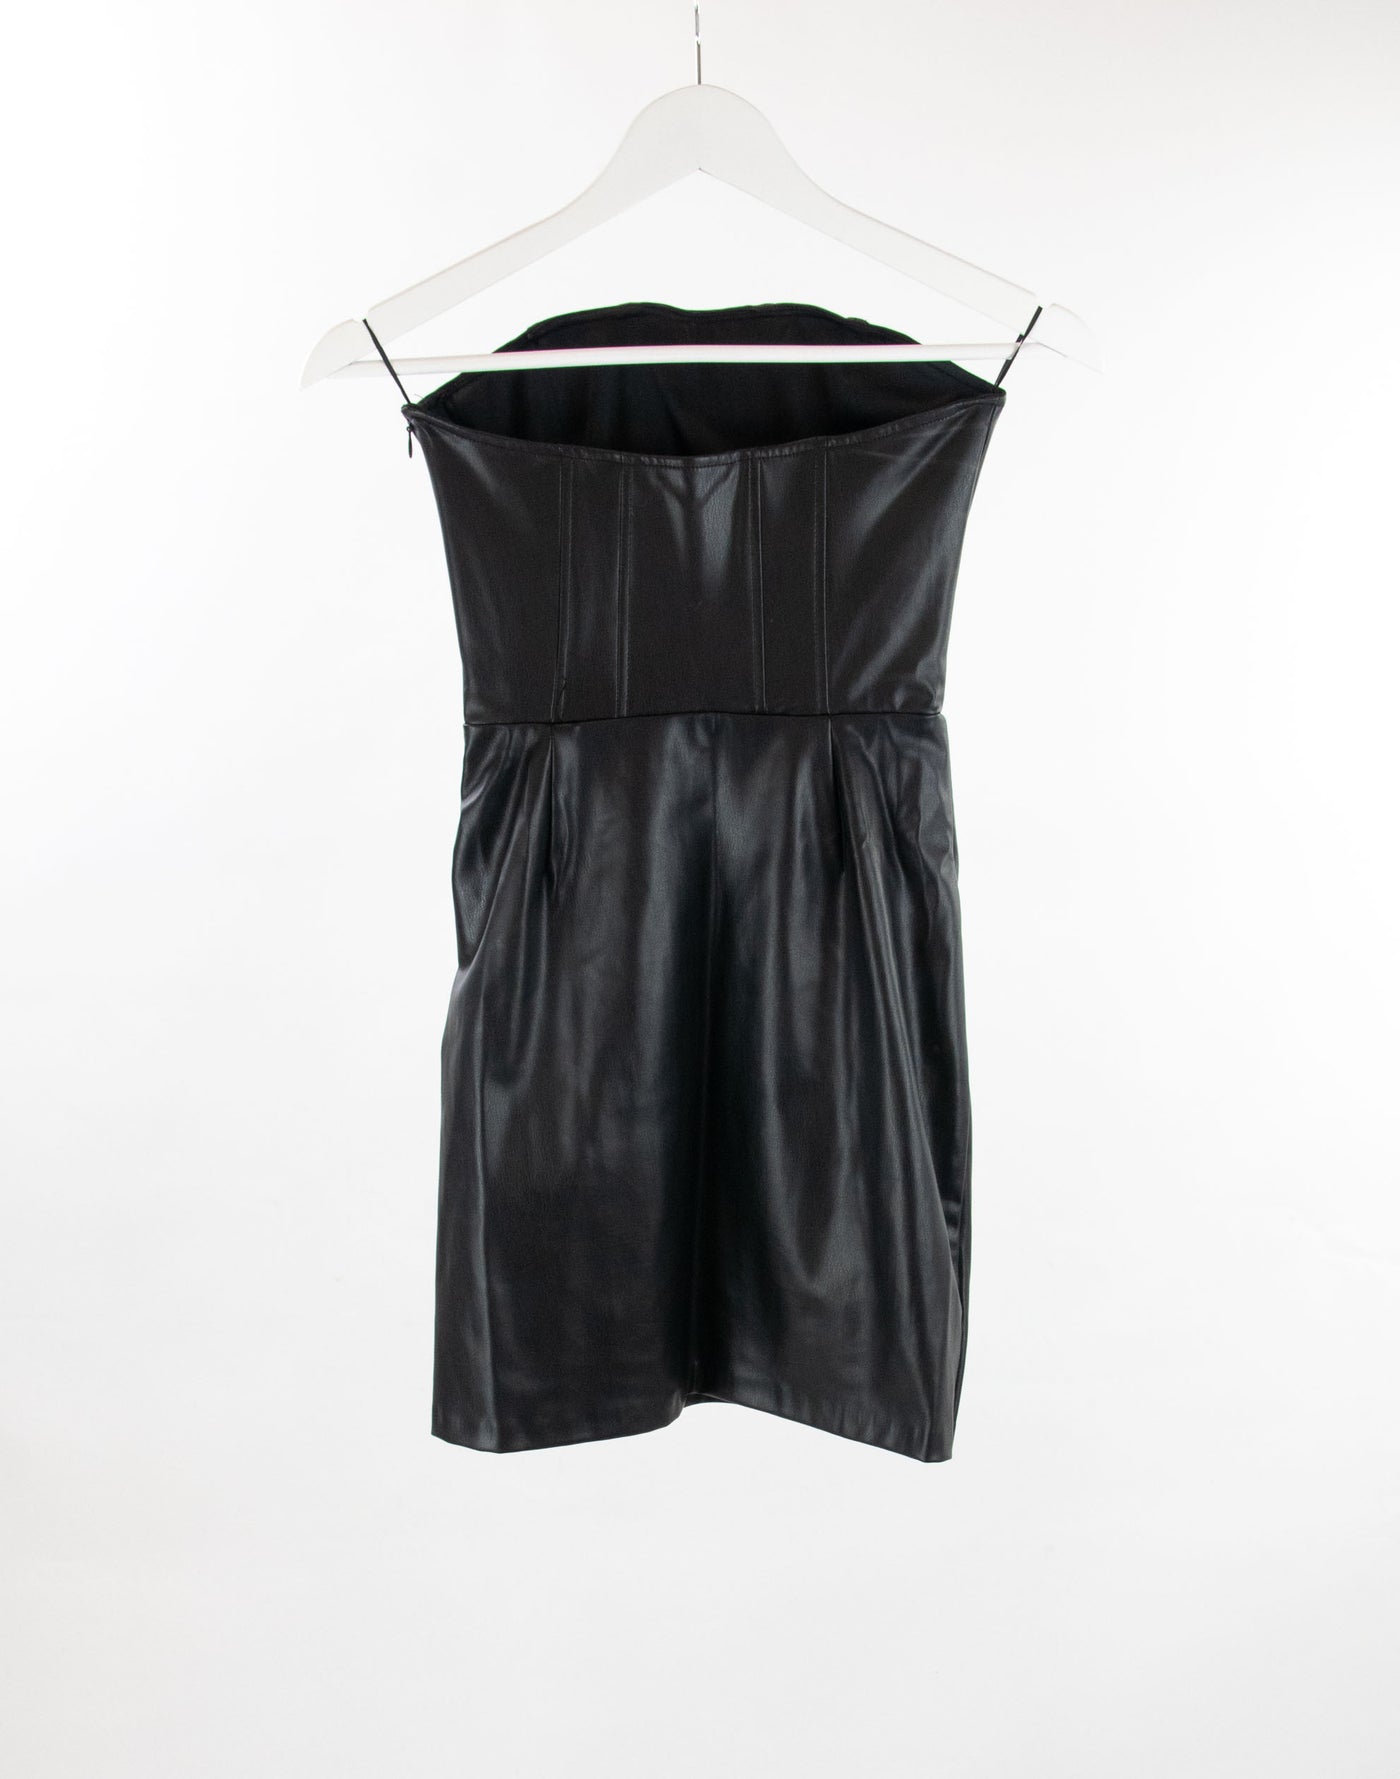 Vestido negro de piel estilo corsetero (NUEVO)